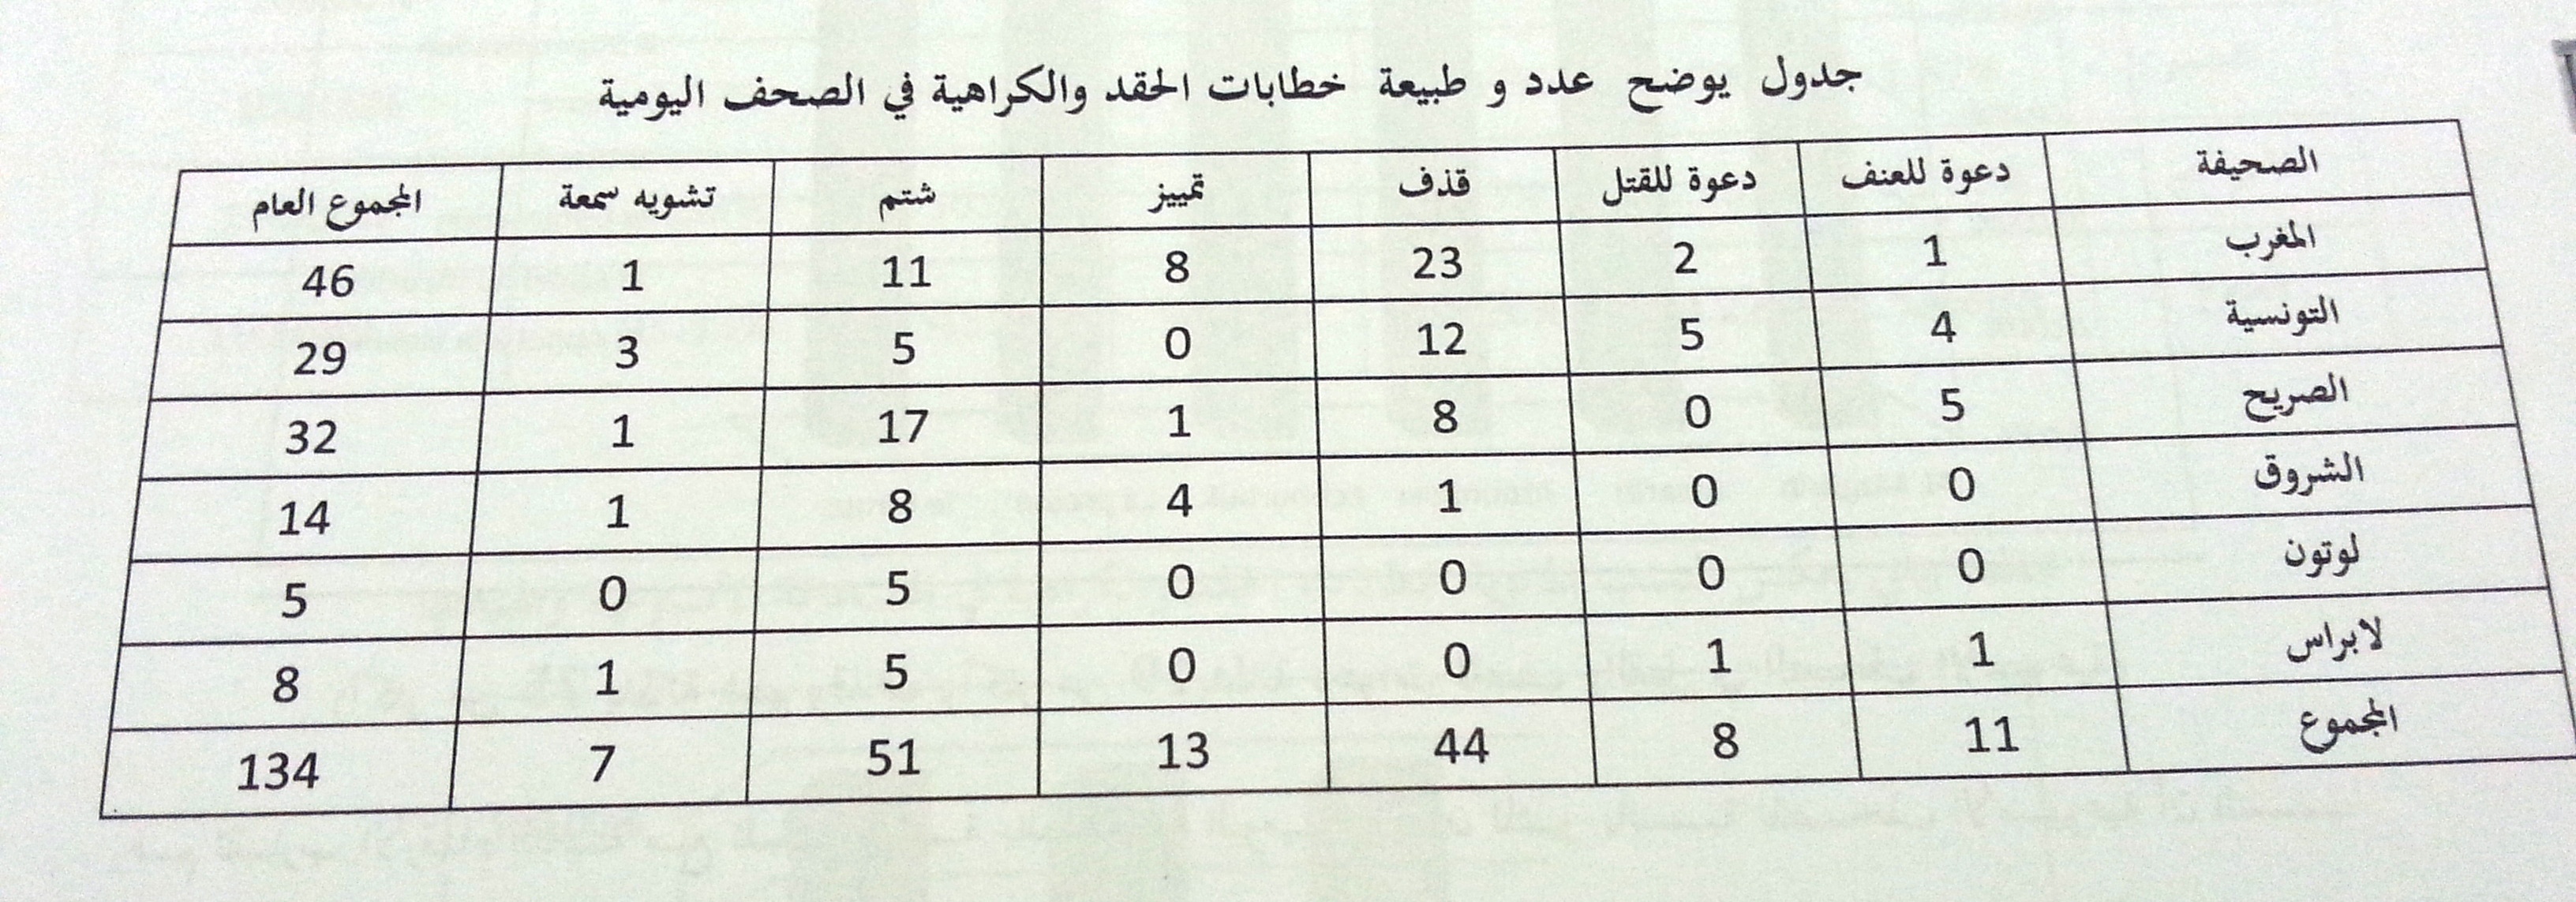 Tableau relatif à la répétition et diffusion des messages de haine dans les journaux quotidiens tunisiens